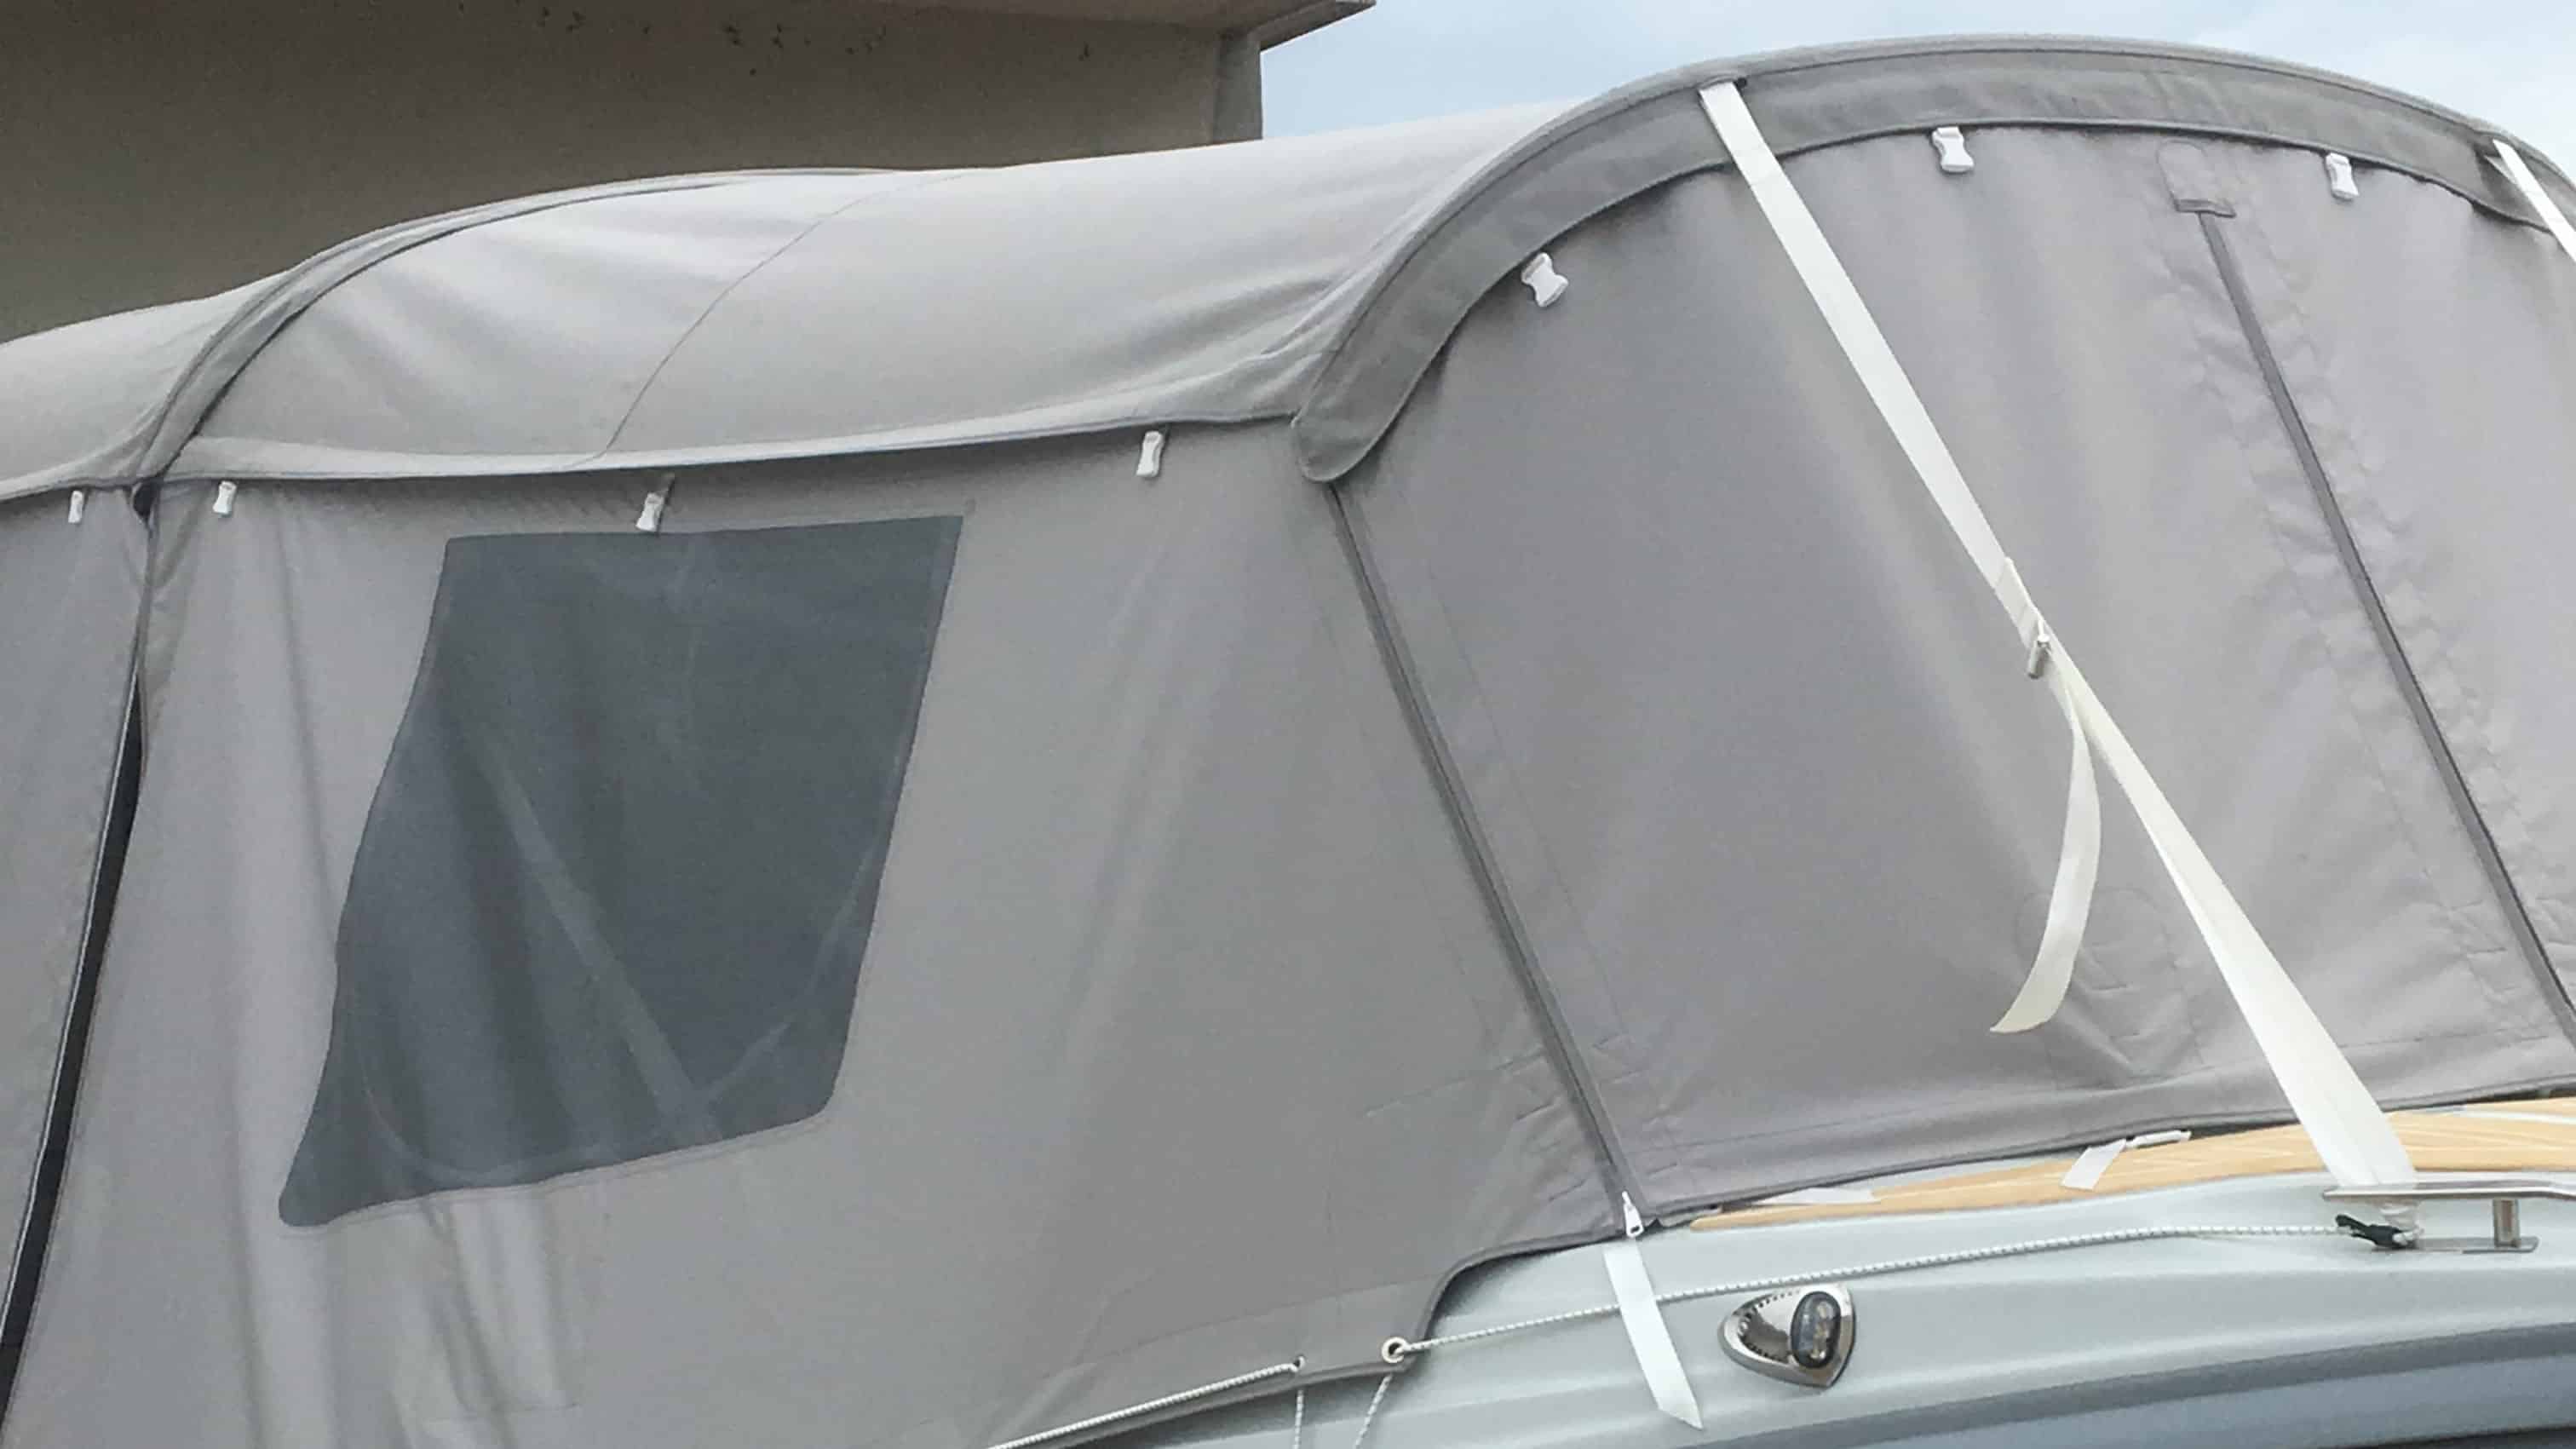 šator tenda u materijalu Sunbrella Surlast s PVC prozorima koji imaju mogućnost rolanja te integriranim komarnicima za GUMENJAK ZAR 65